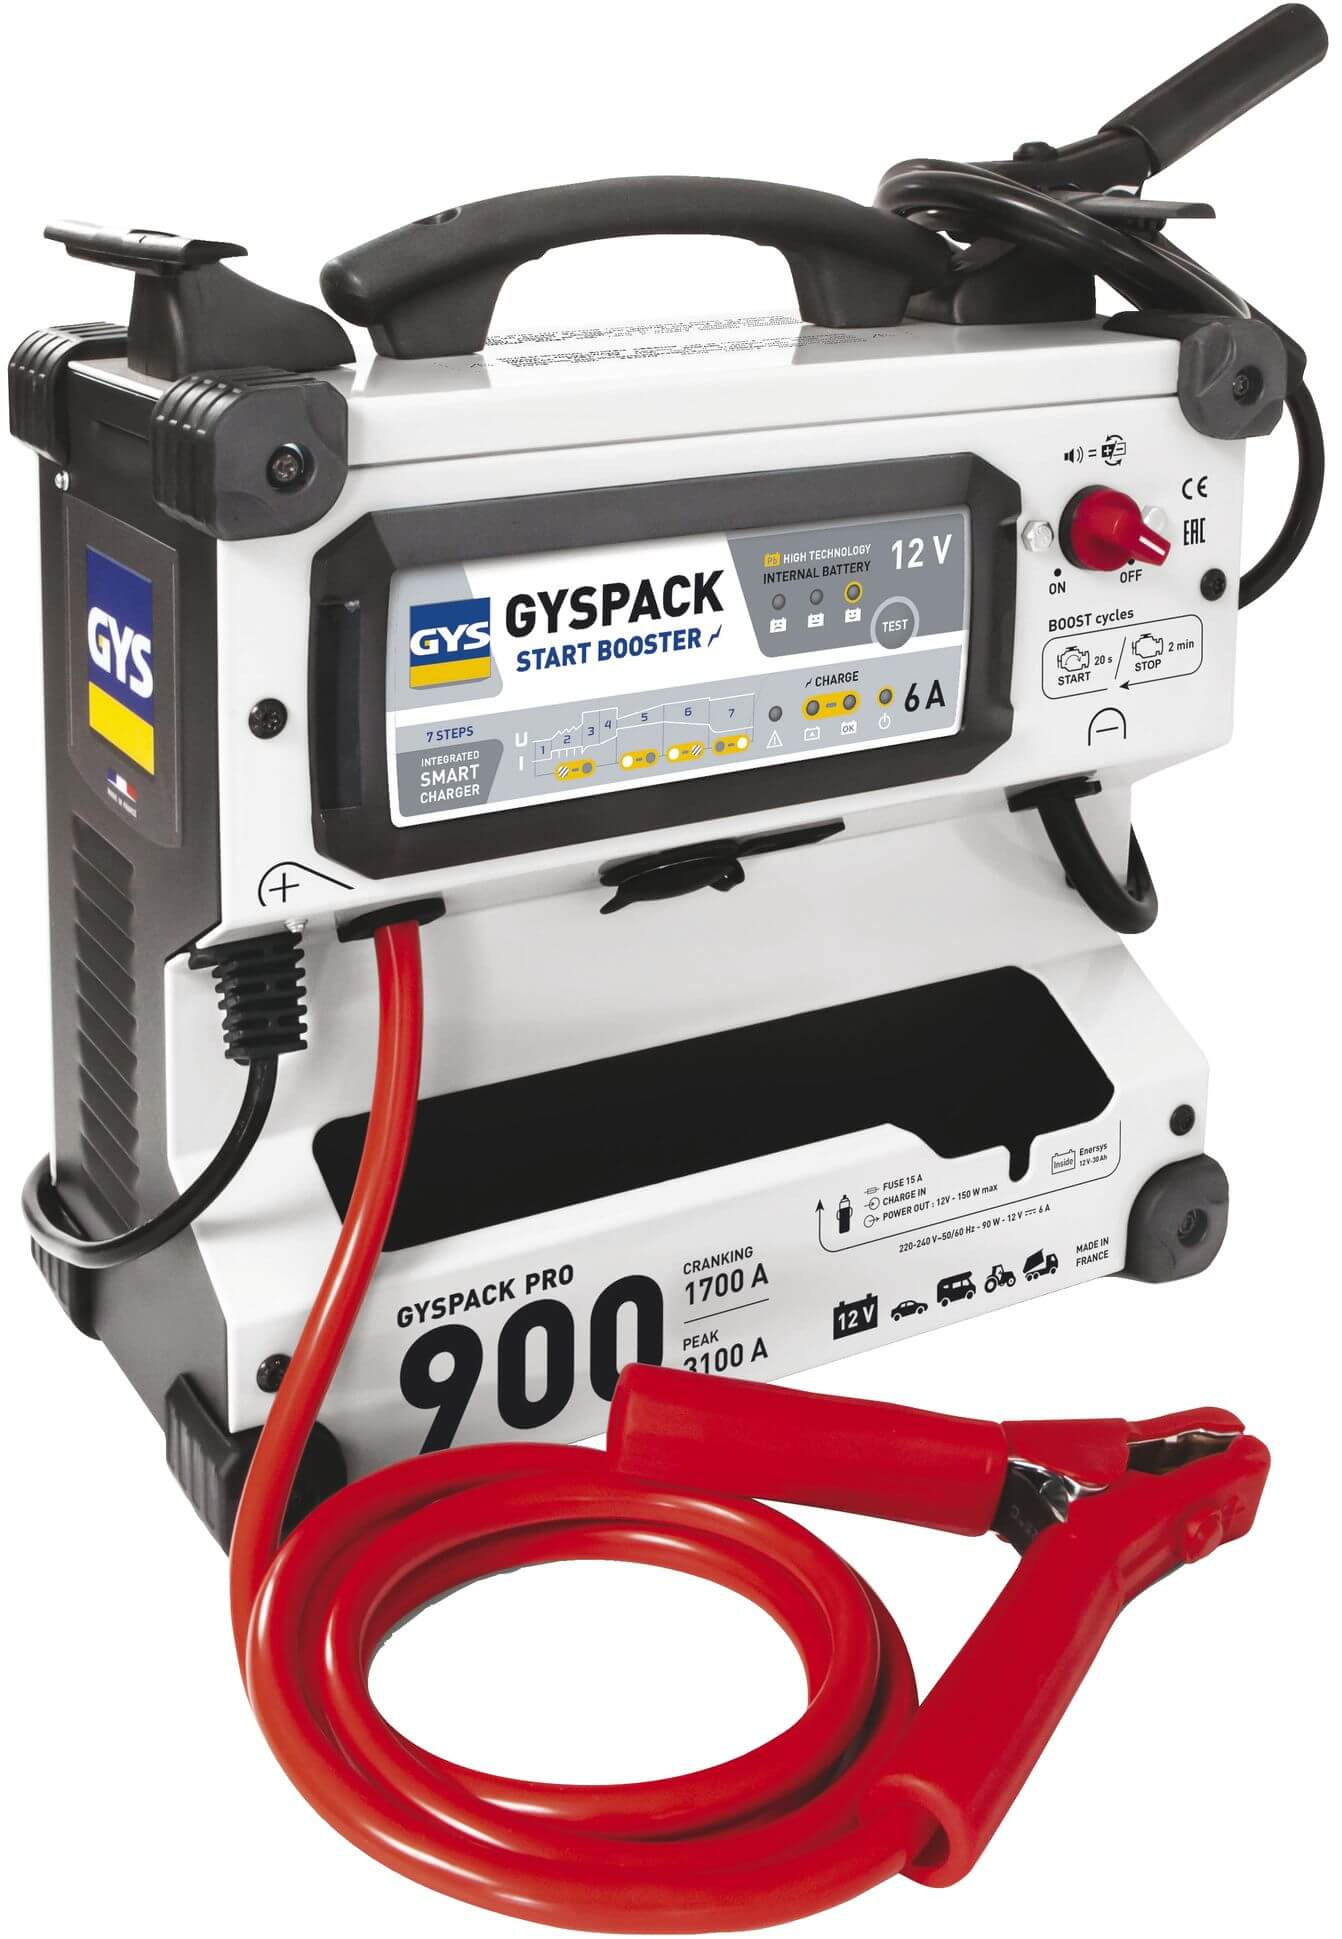 Gyspack PRO 900 12 V apukäynnistin ja akkulaturi, GYS